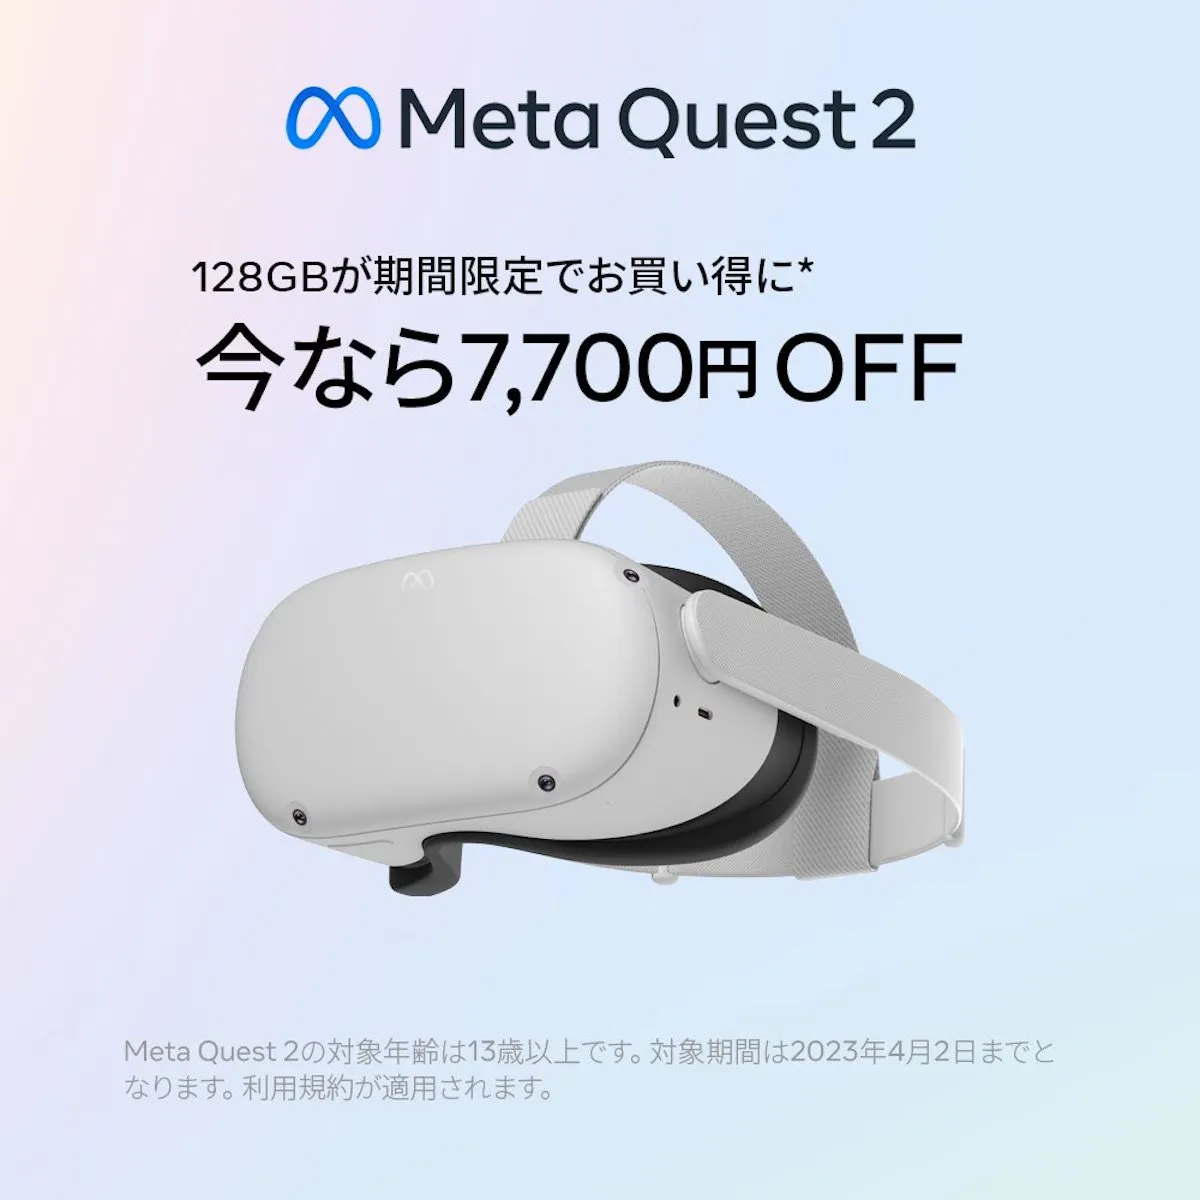 Meta Quest 2｣ 128GBモデルが7,700円オフ。59,400円→51,700円、4月2日まで